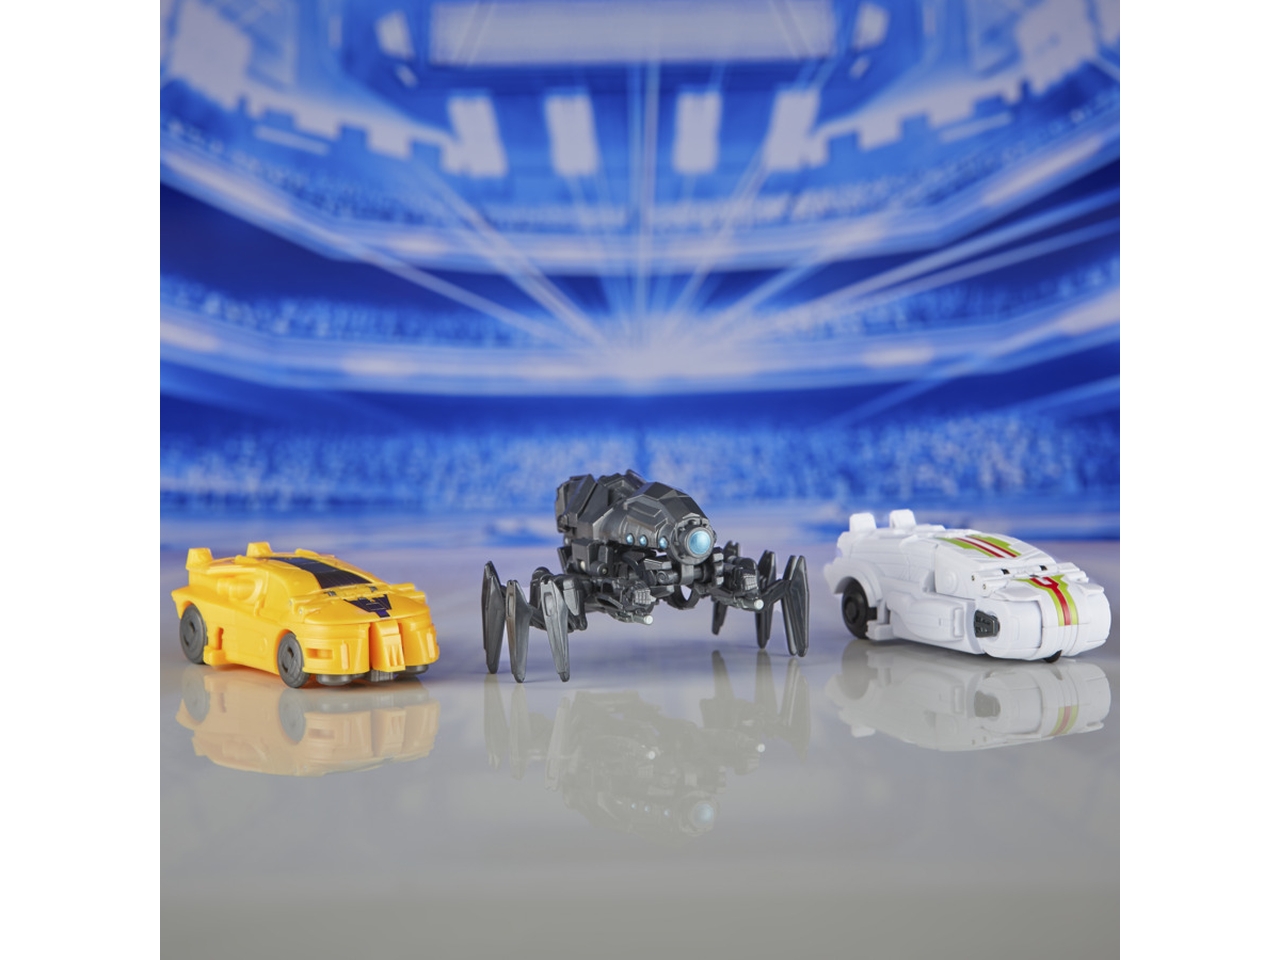 Trasformers, MV8  1 Step Changer, Personaggi giocattolo assortiti per bambini - Hasbro